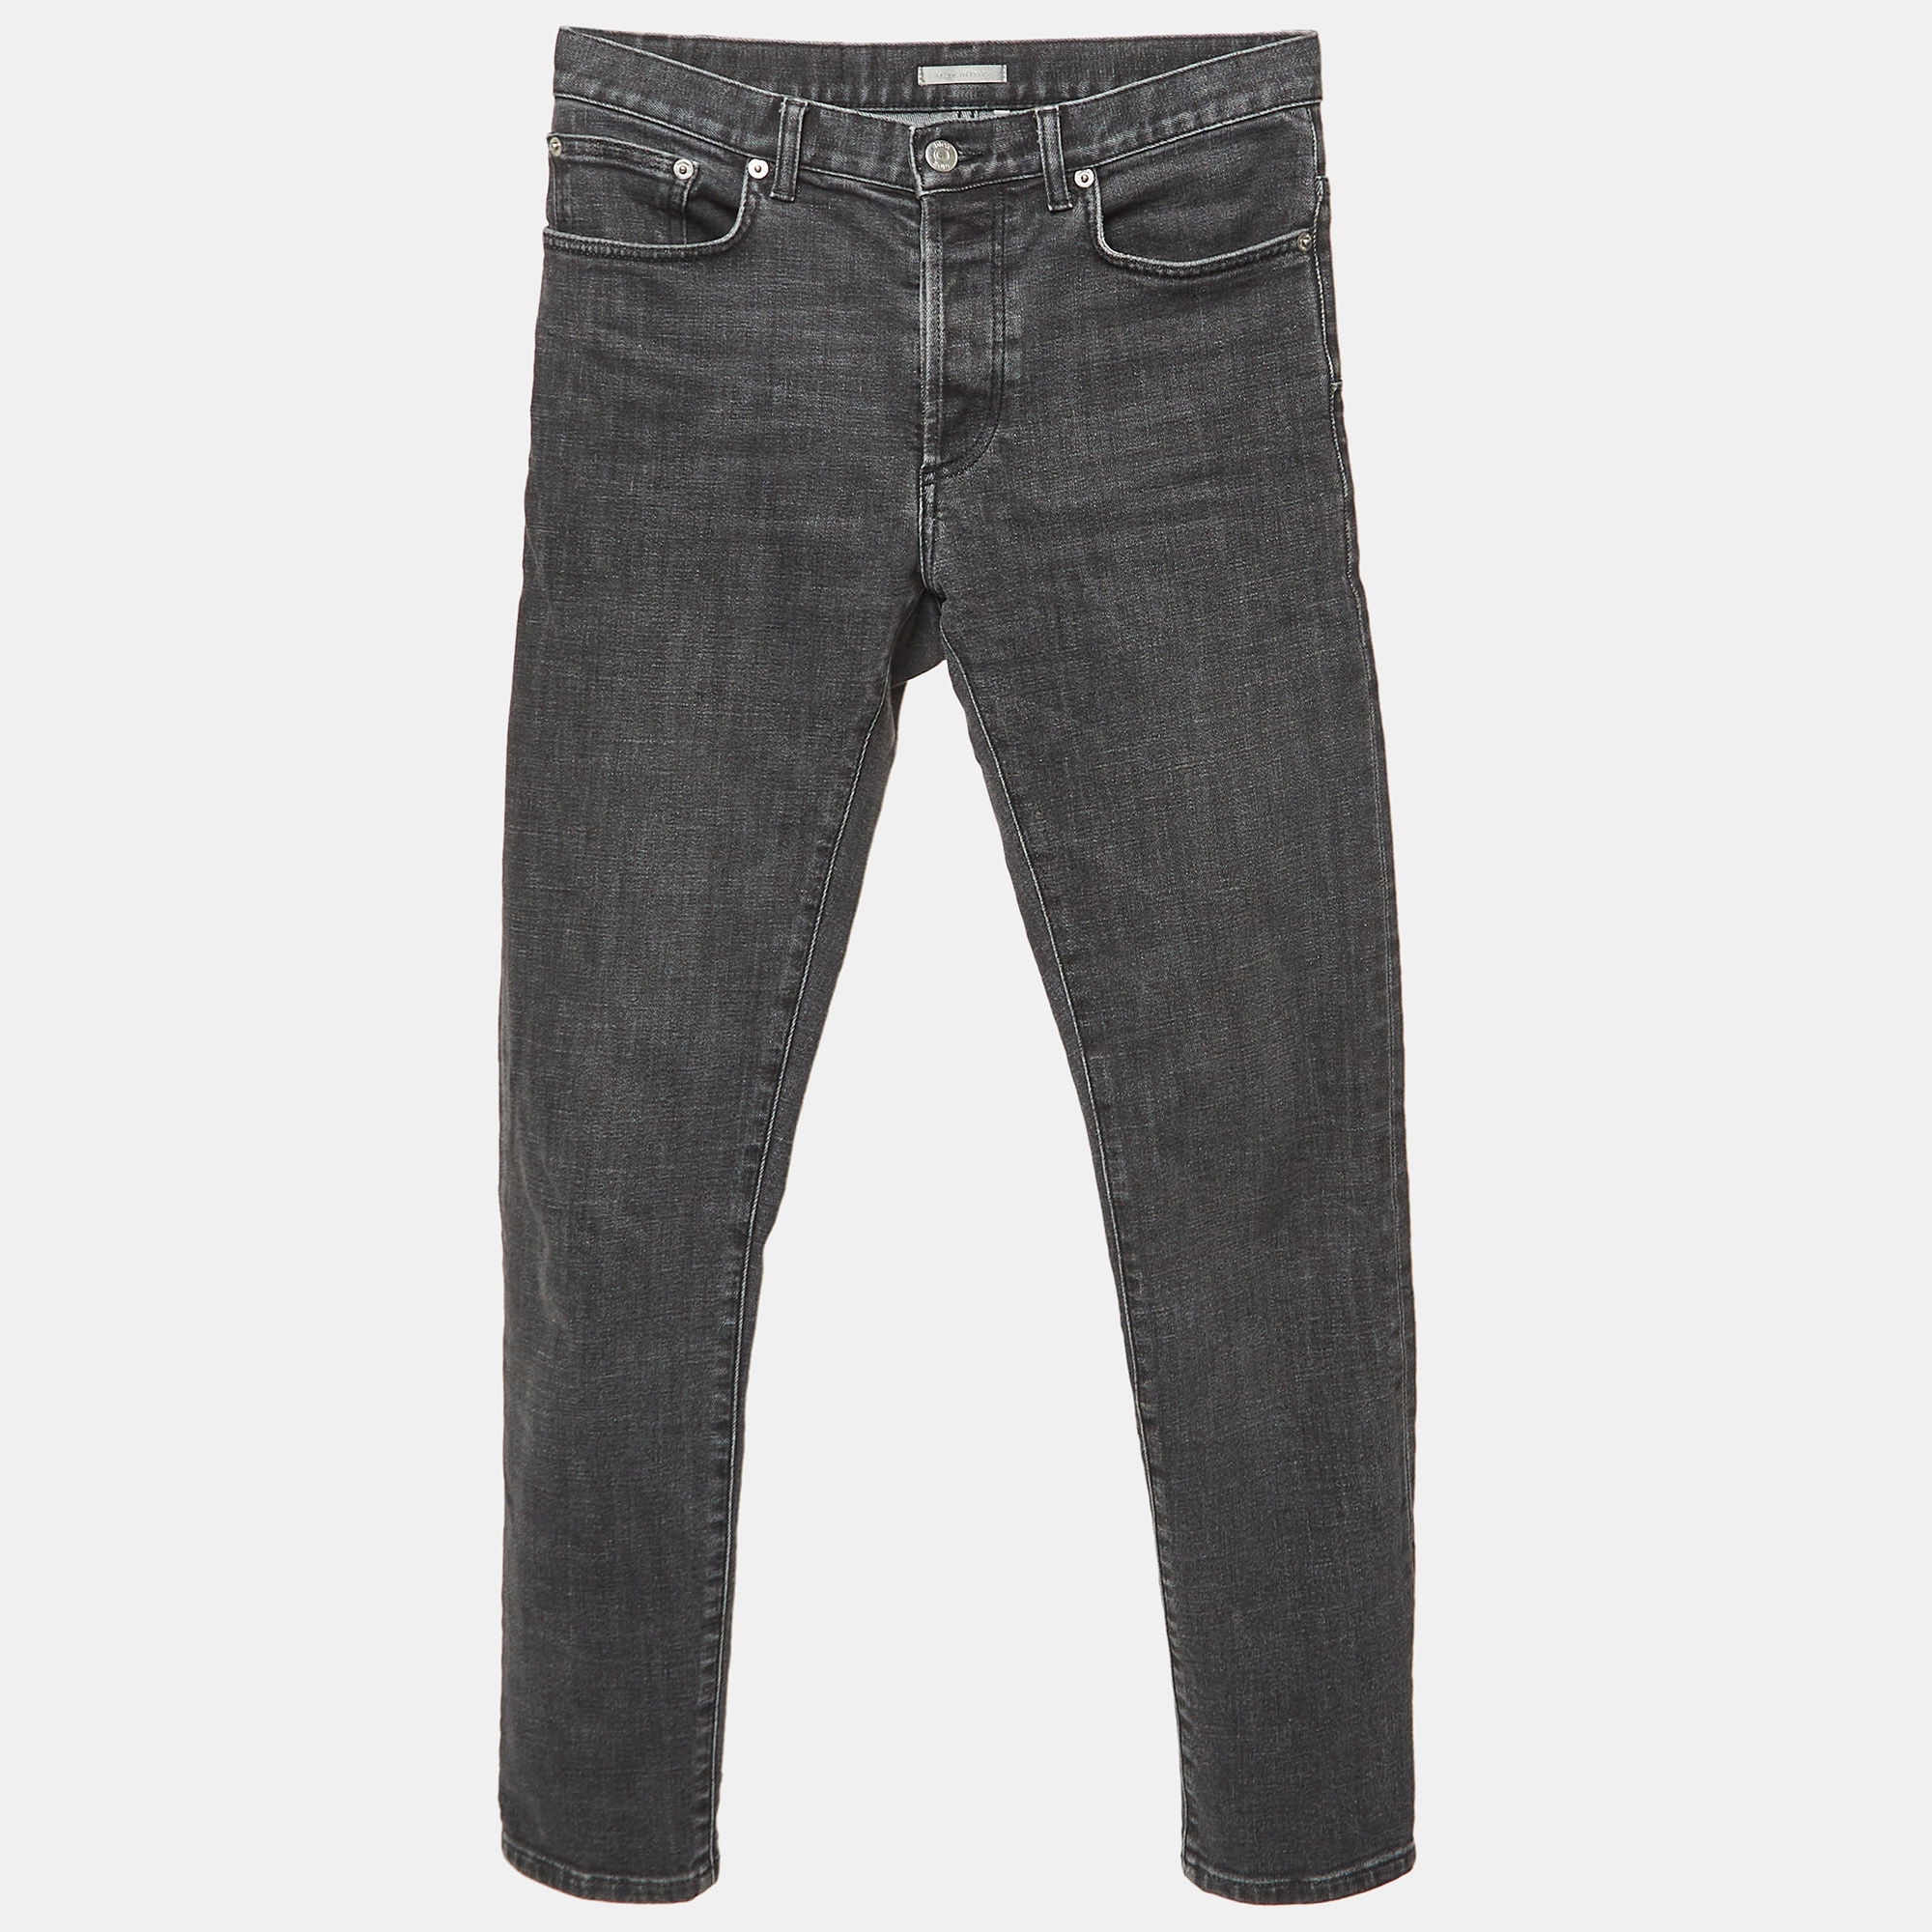 

Dior Homme Grey Denim Slim Regular Jeans S Waist 28"